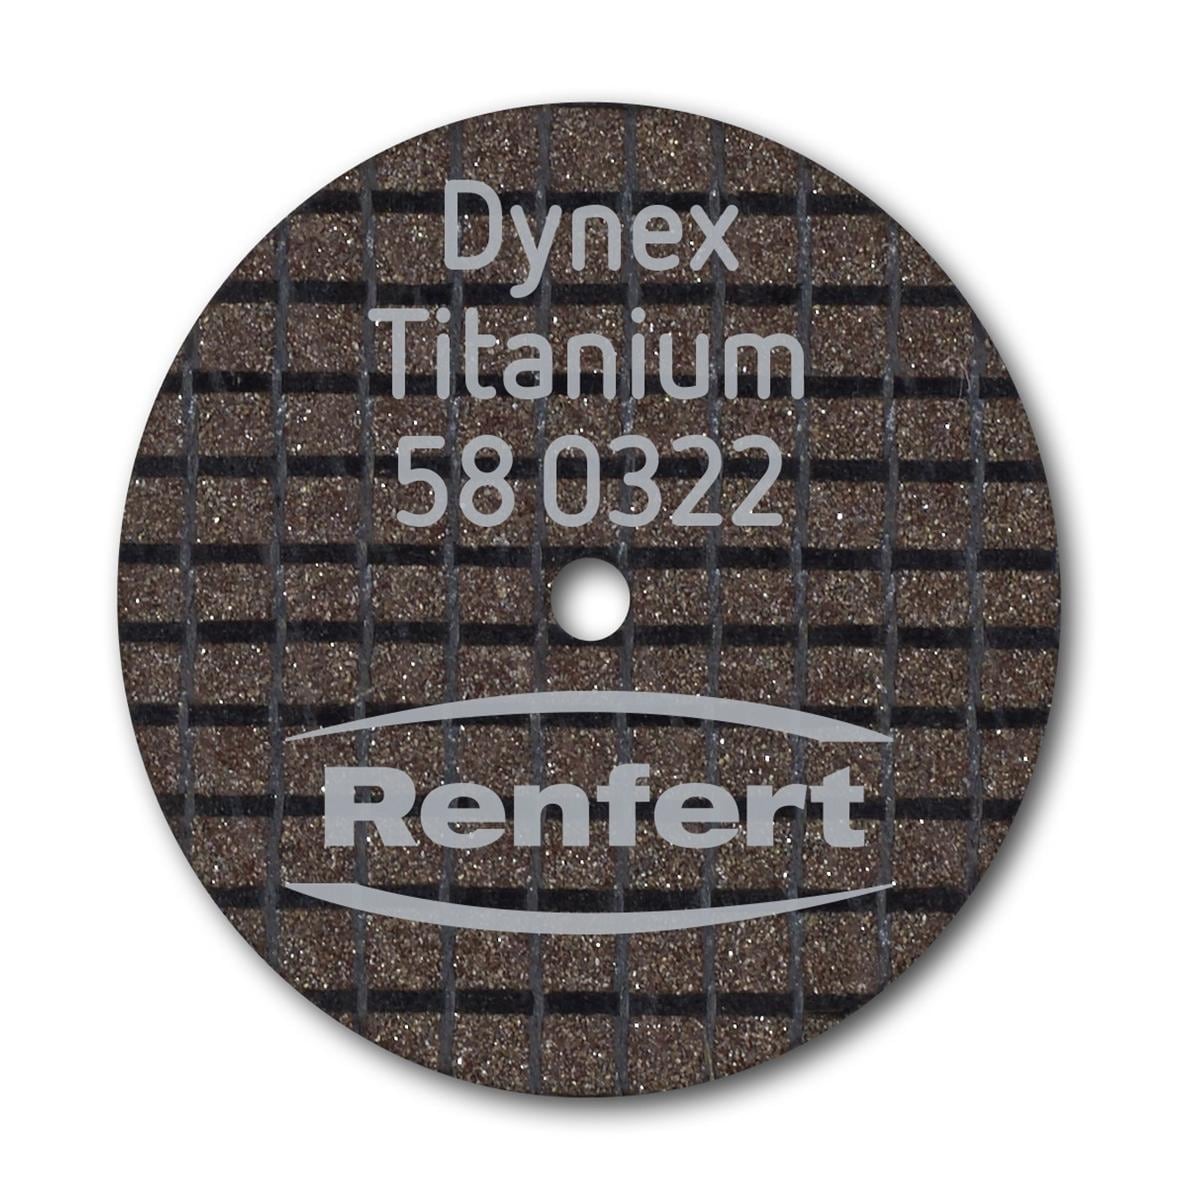 Dynex Titanium Trennscheibe - Ø 22 mm, Stärke 0,3 mm, Packung 20 Stück